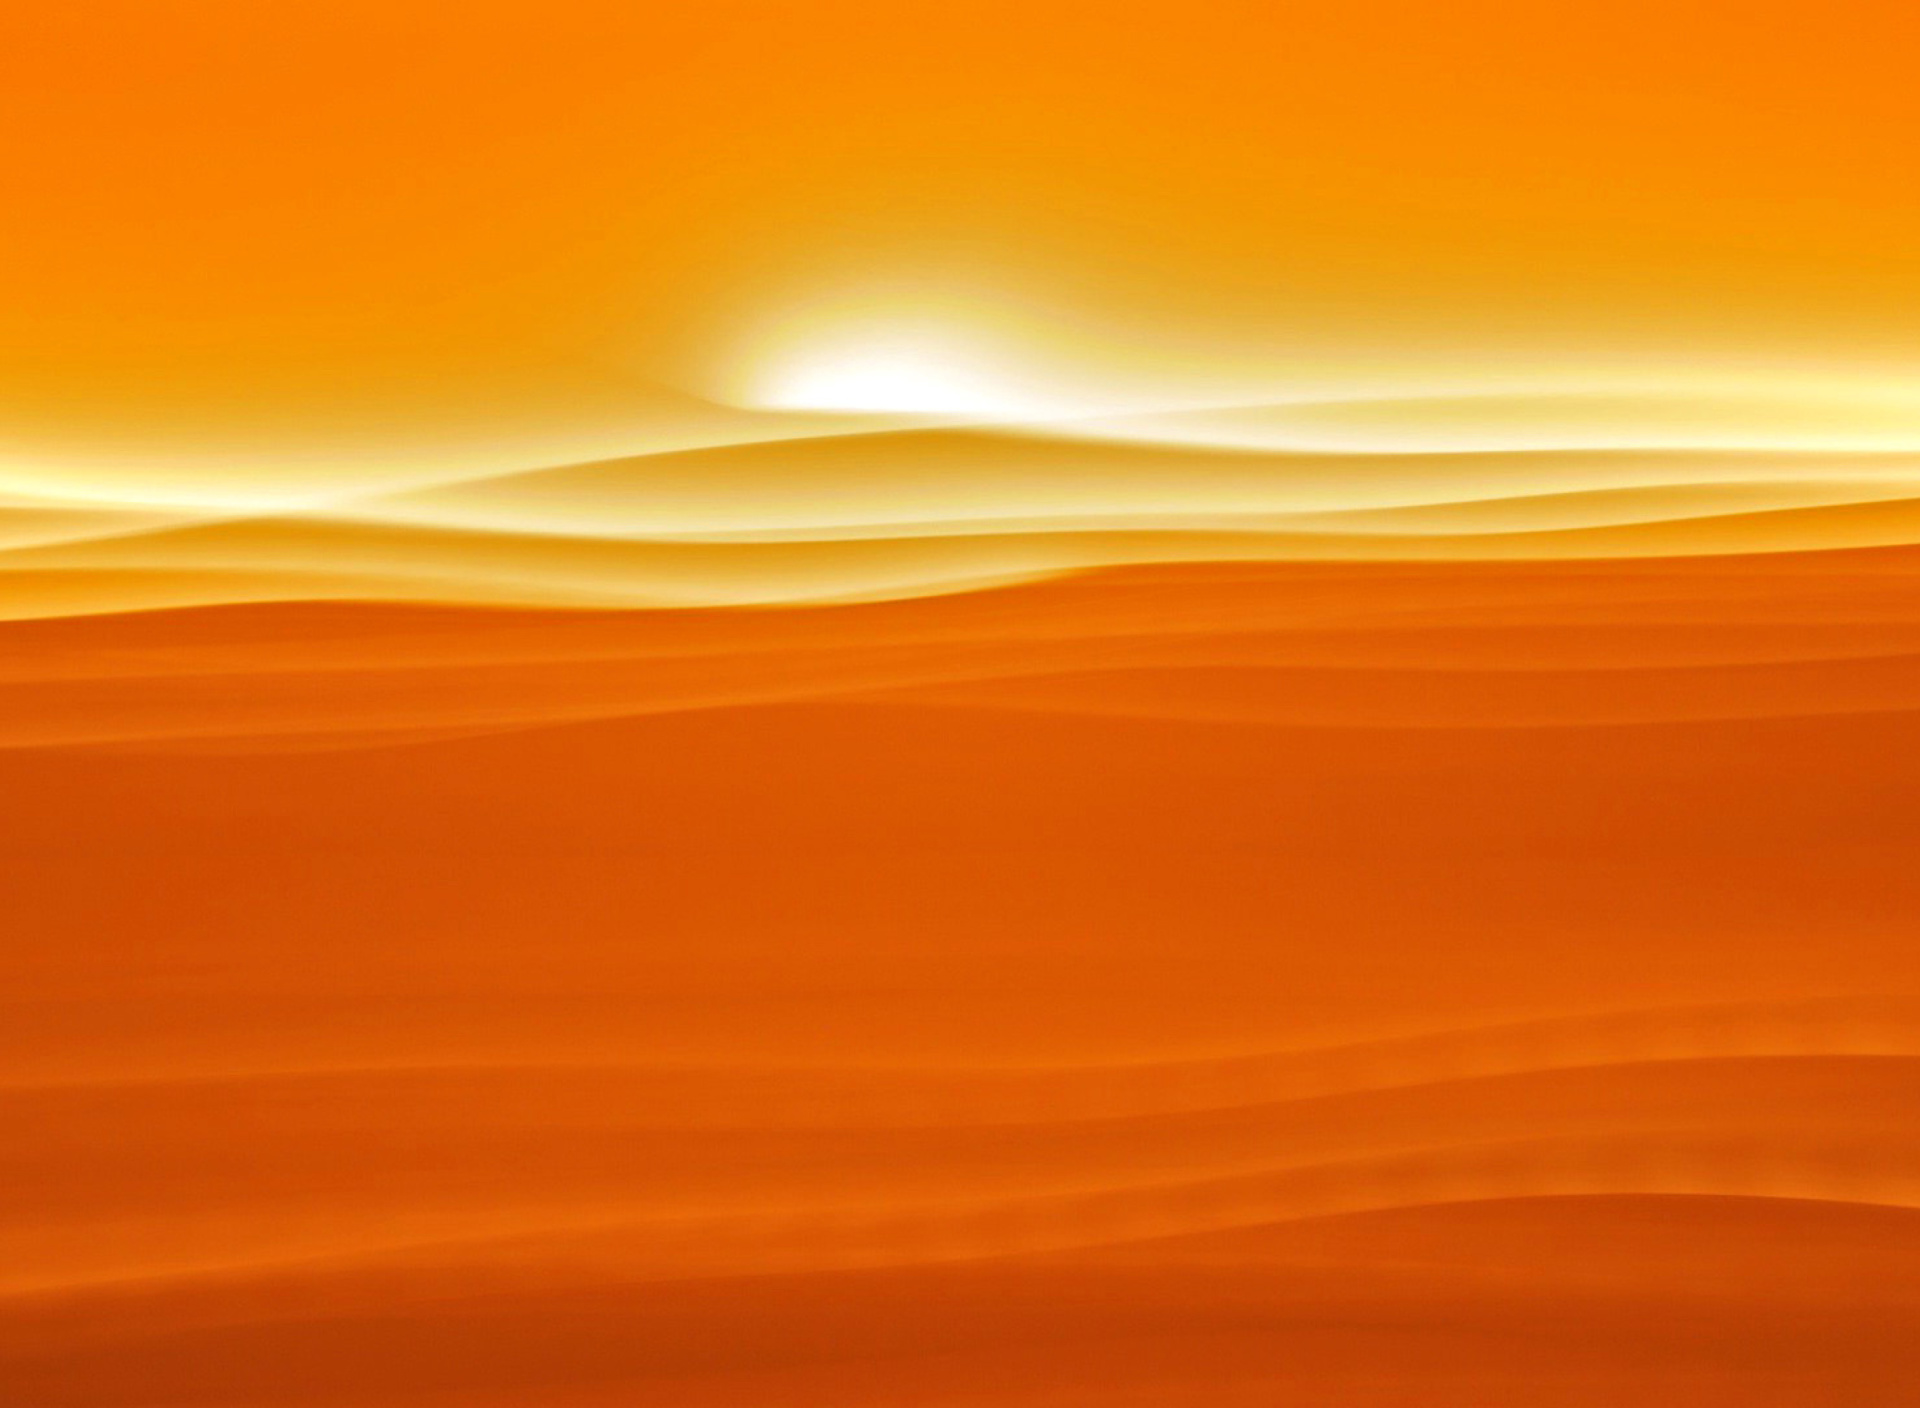 Обои Orange Sky and Desert 1920x1408